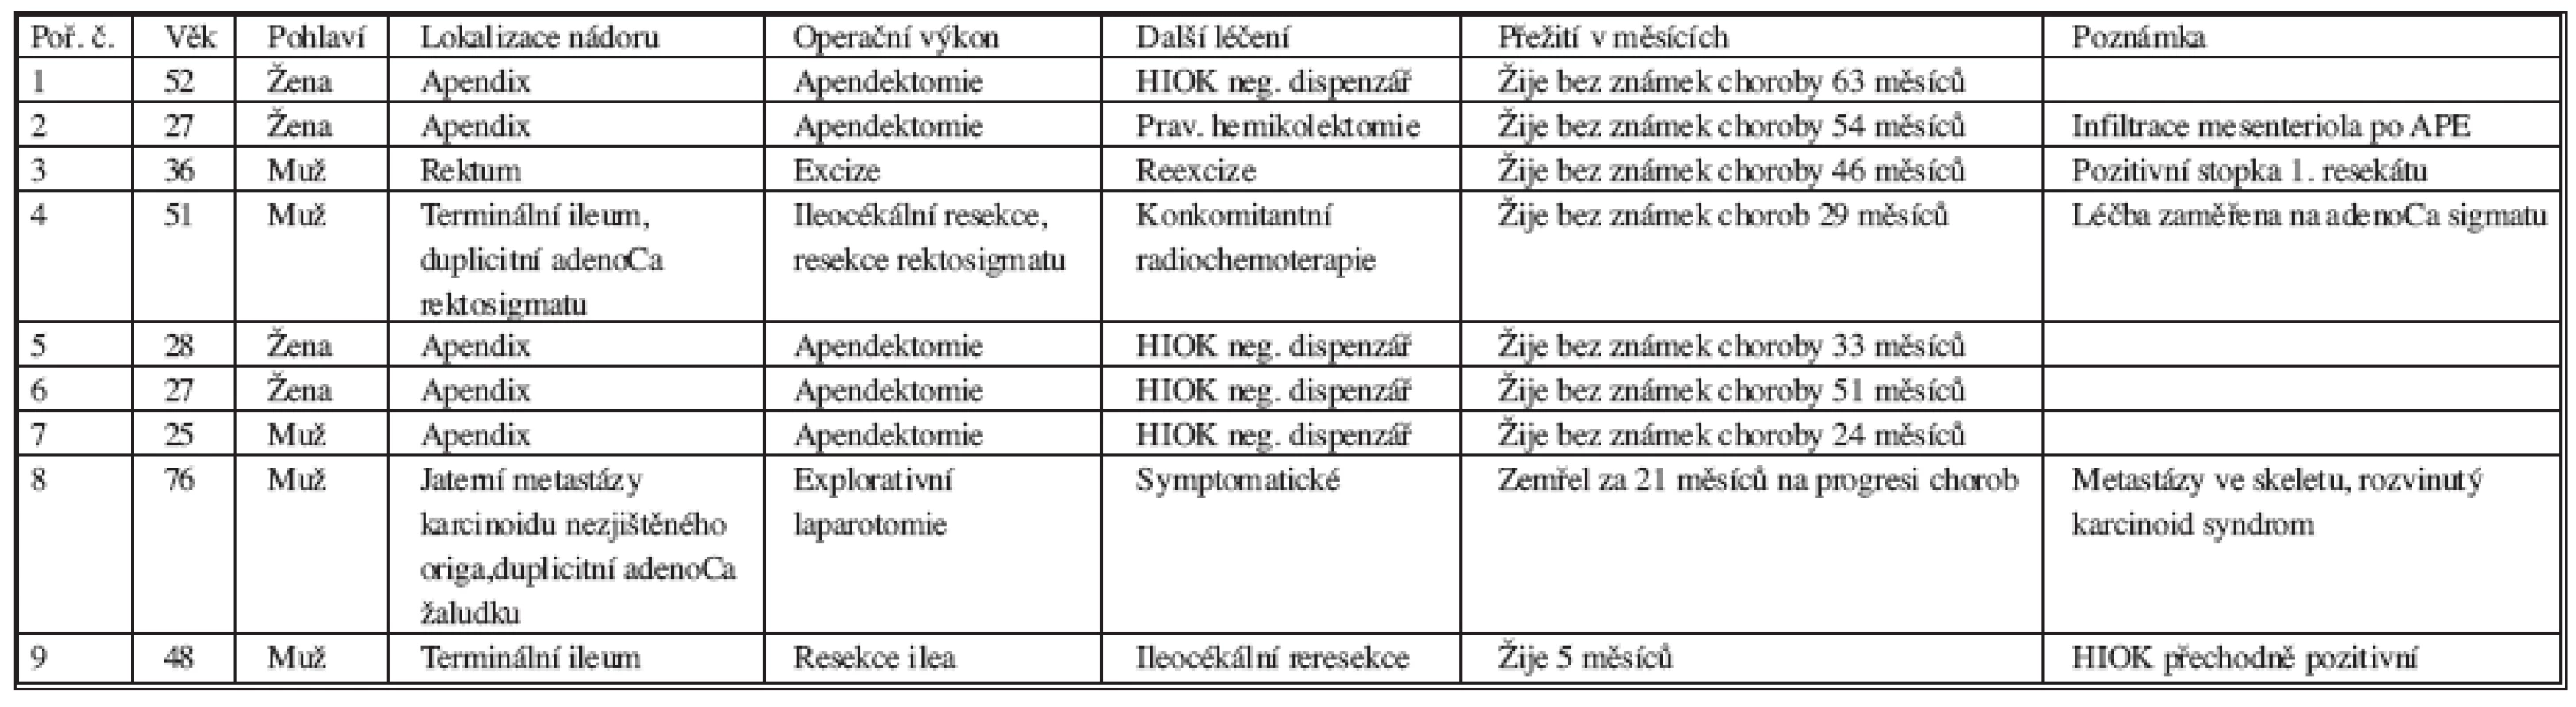 Přehled nemocných s karcinoidem GIT na CHIRO FN Plzeň-Bory – 2002 (leden) – 2007 (červen)
Tab. 1. GIT carcinoid patients hospitalized in CHIRO FN Plzeň-Bory – 2002 (January) – 2007 (June)